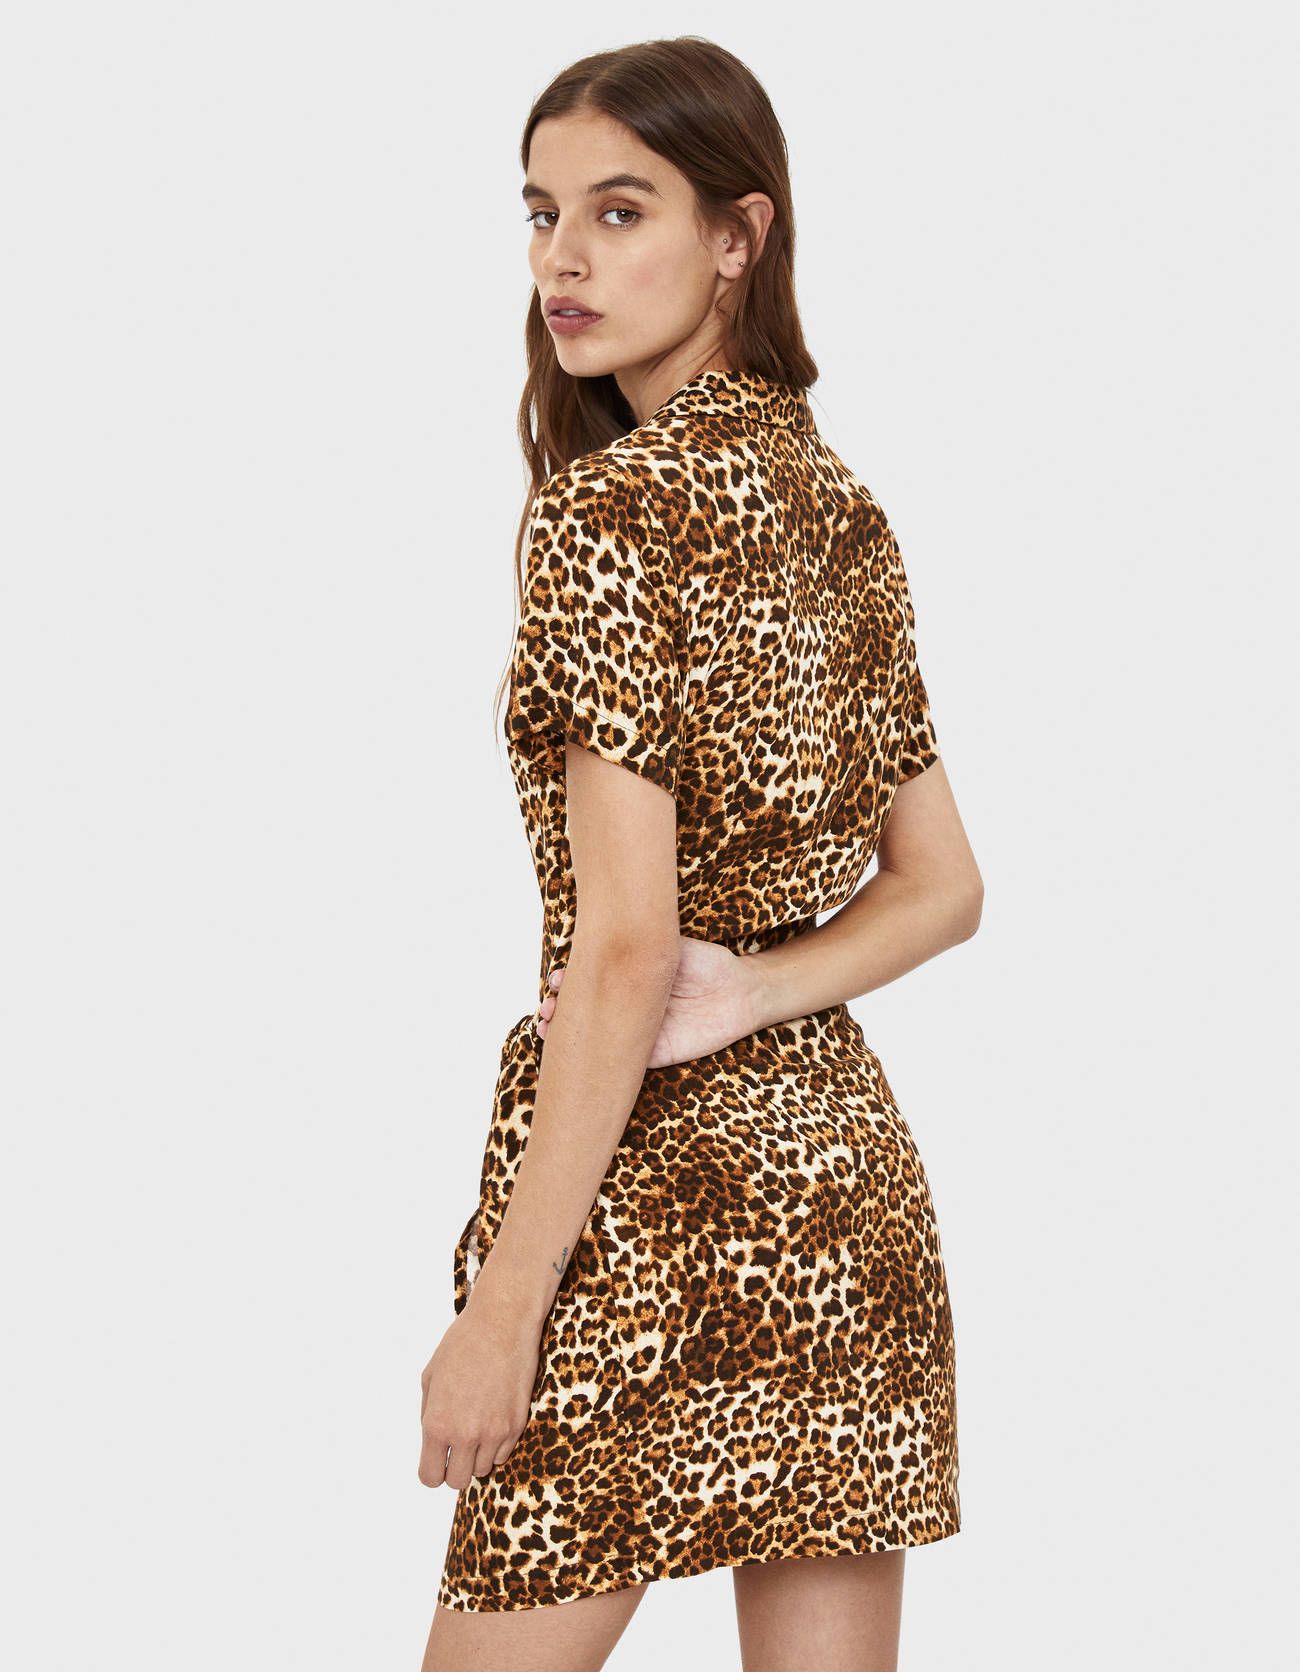 Persona australiana ruido Idear Bershka tiene el vestido de leopardo ideal para esta primavera